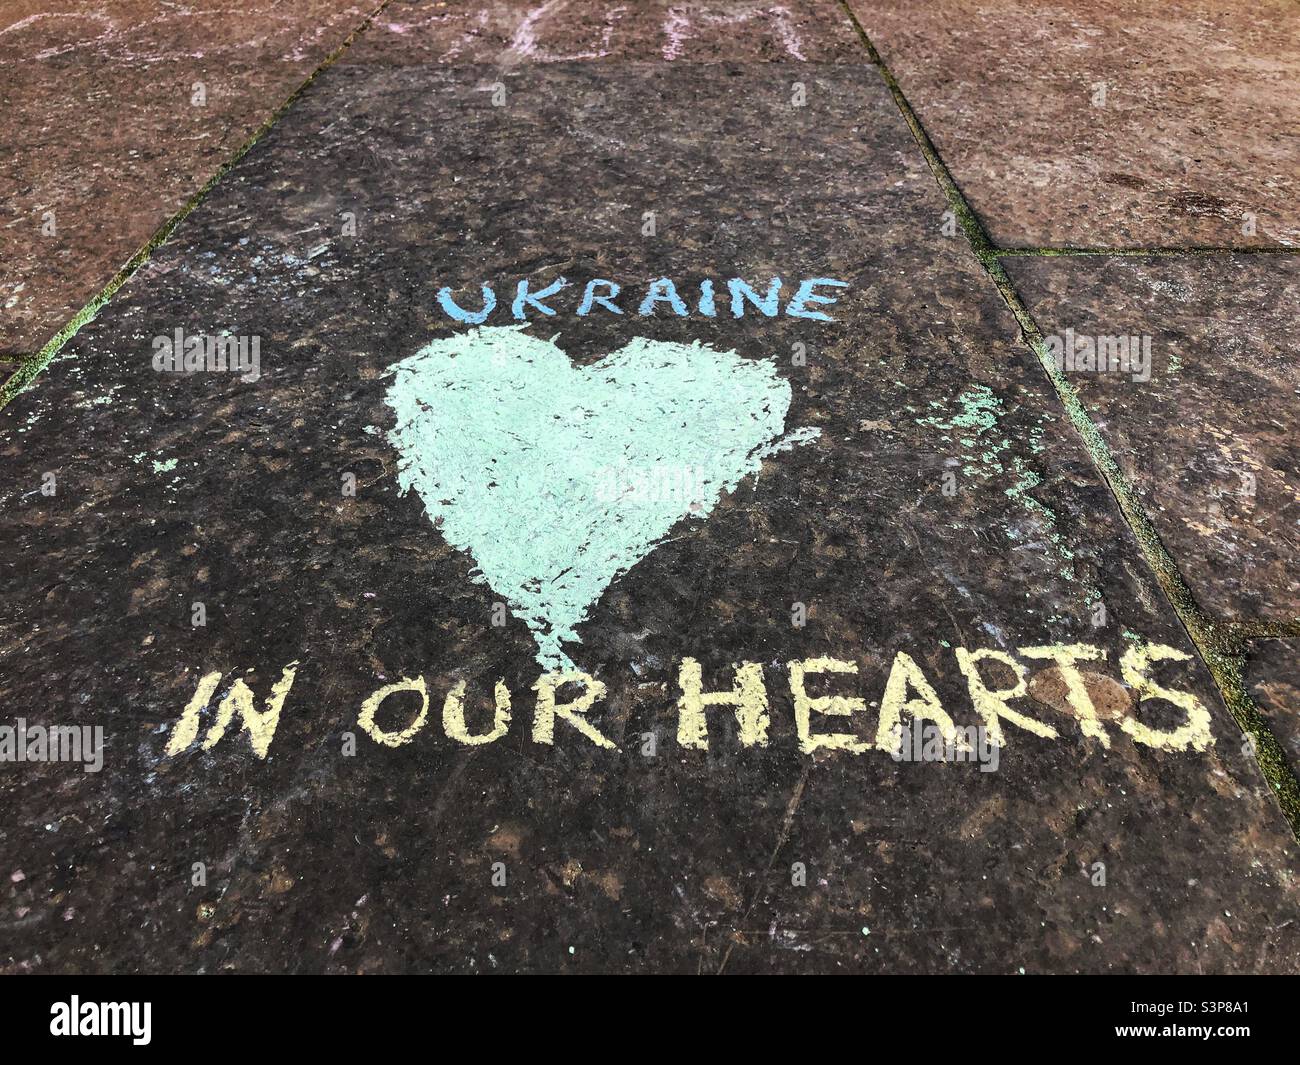 Graffiti for the Russia Ukraine conflict at the Mound, Edinburgh Scotland Stock Photo